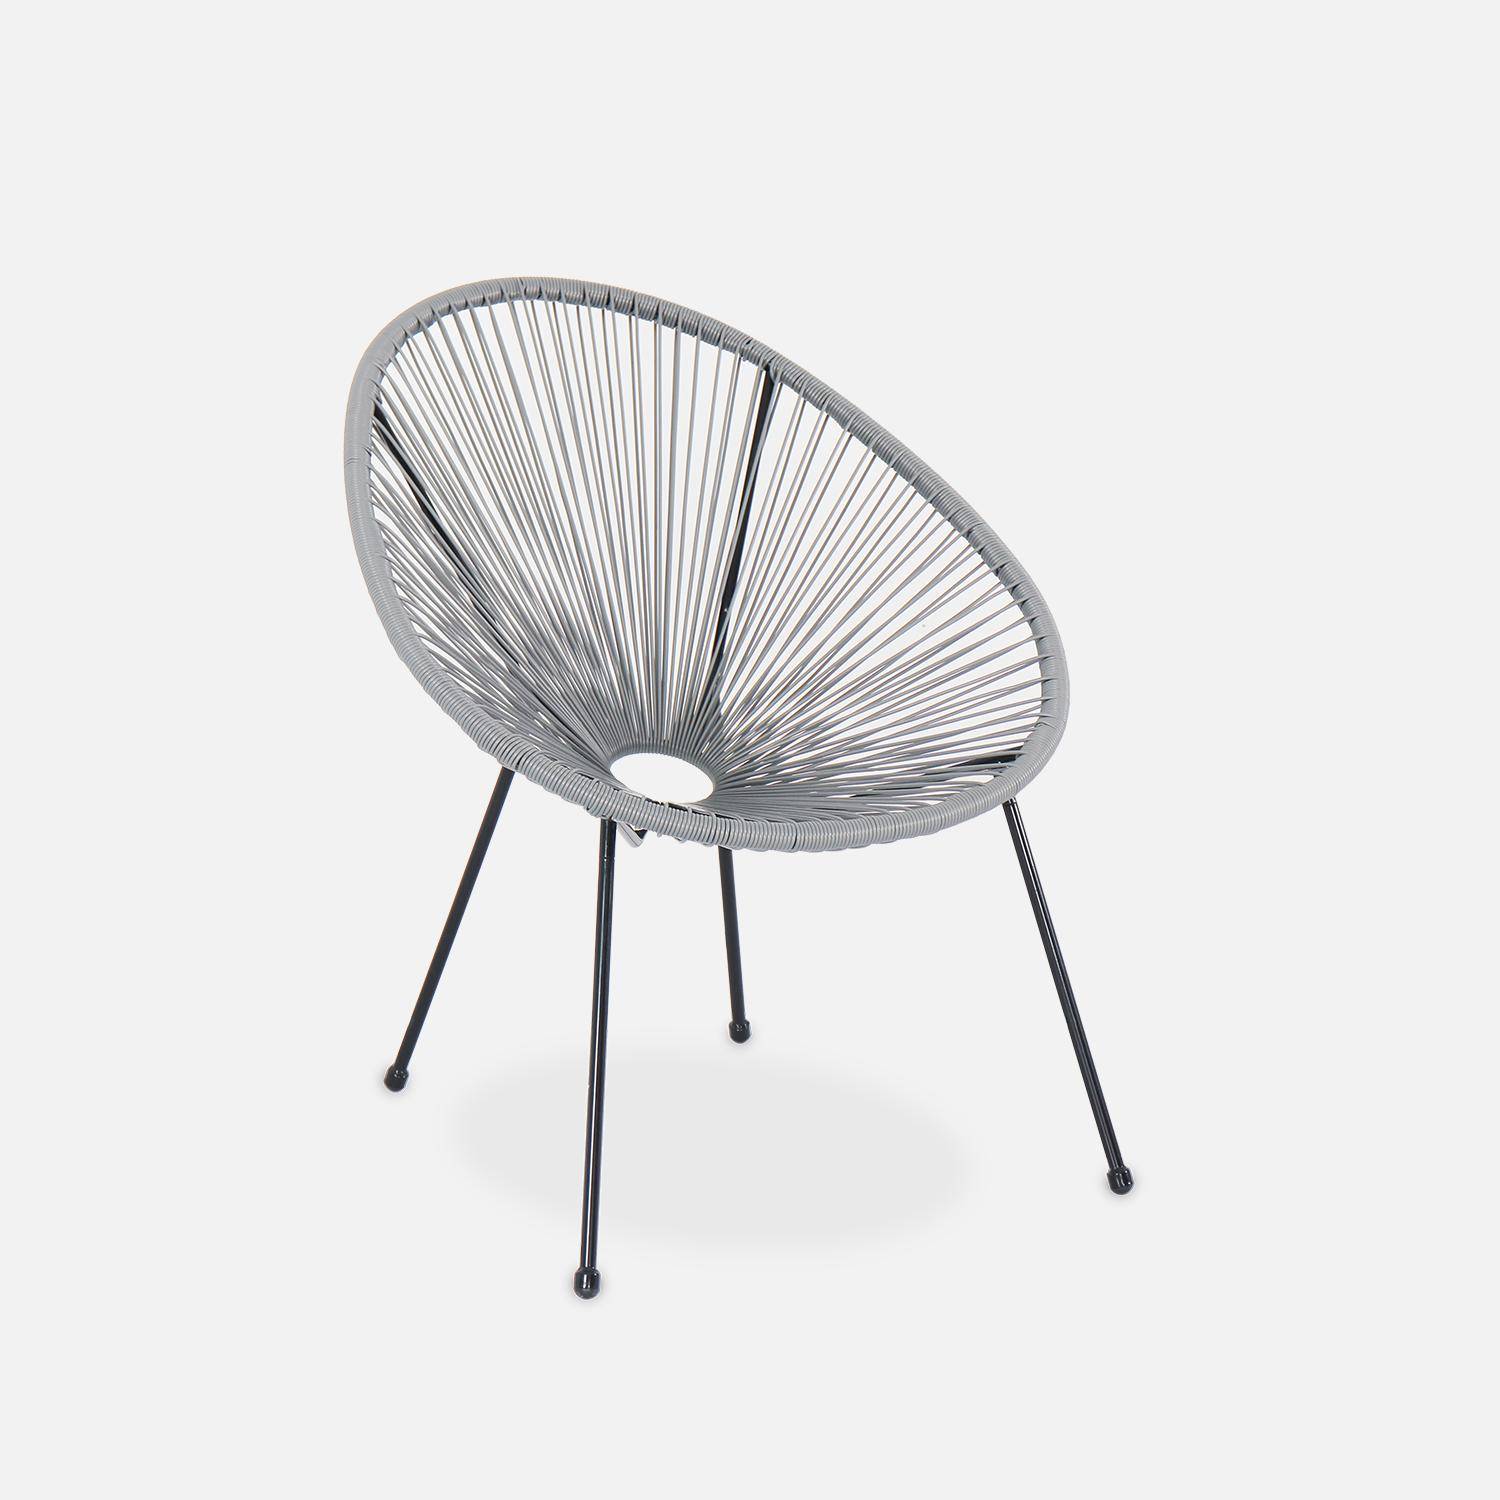 ACAPULCO stoel ei-vormig -Donkergrijs- Stoel 4 poten retro design, plastic koorden, binnen/buiten Photo2